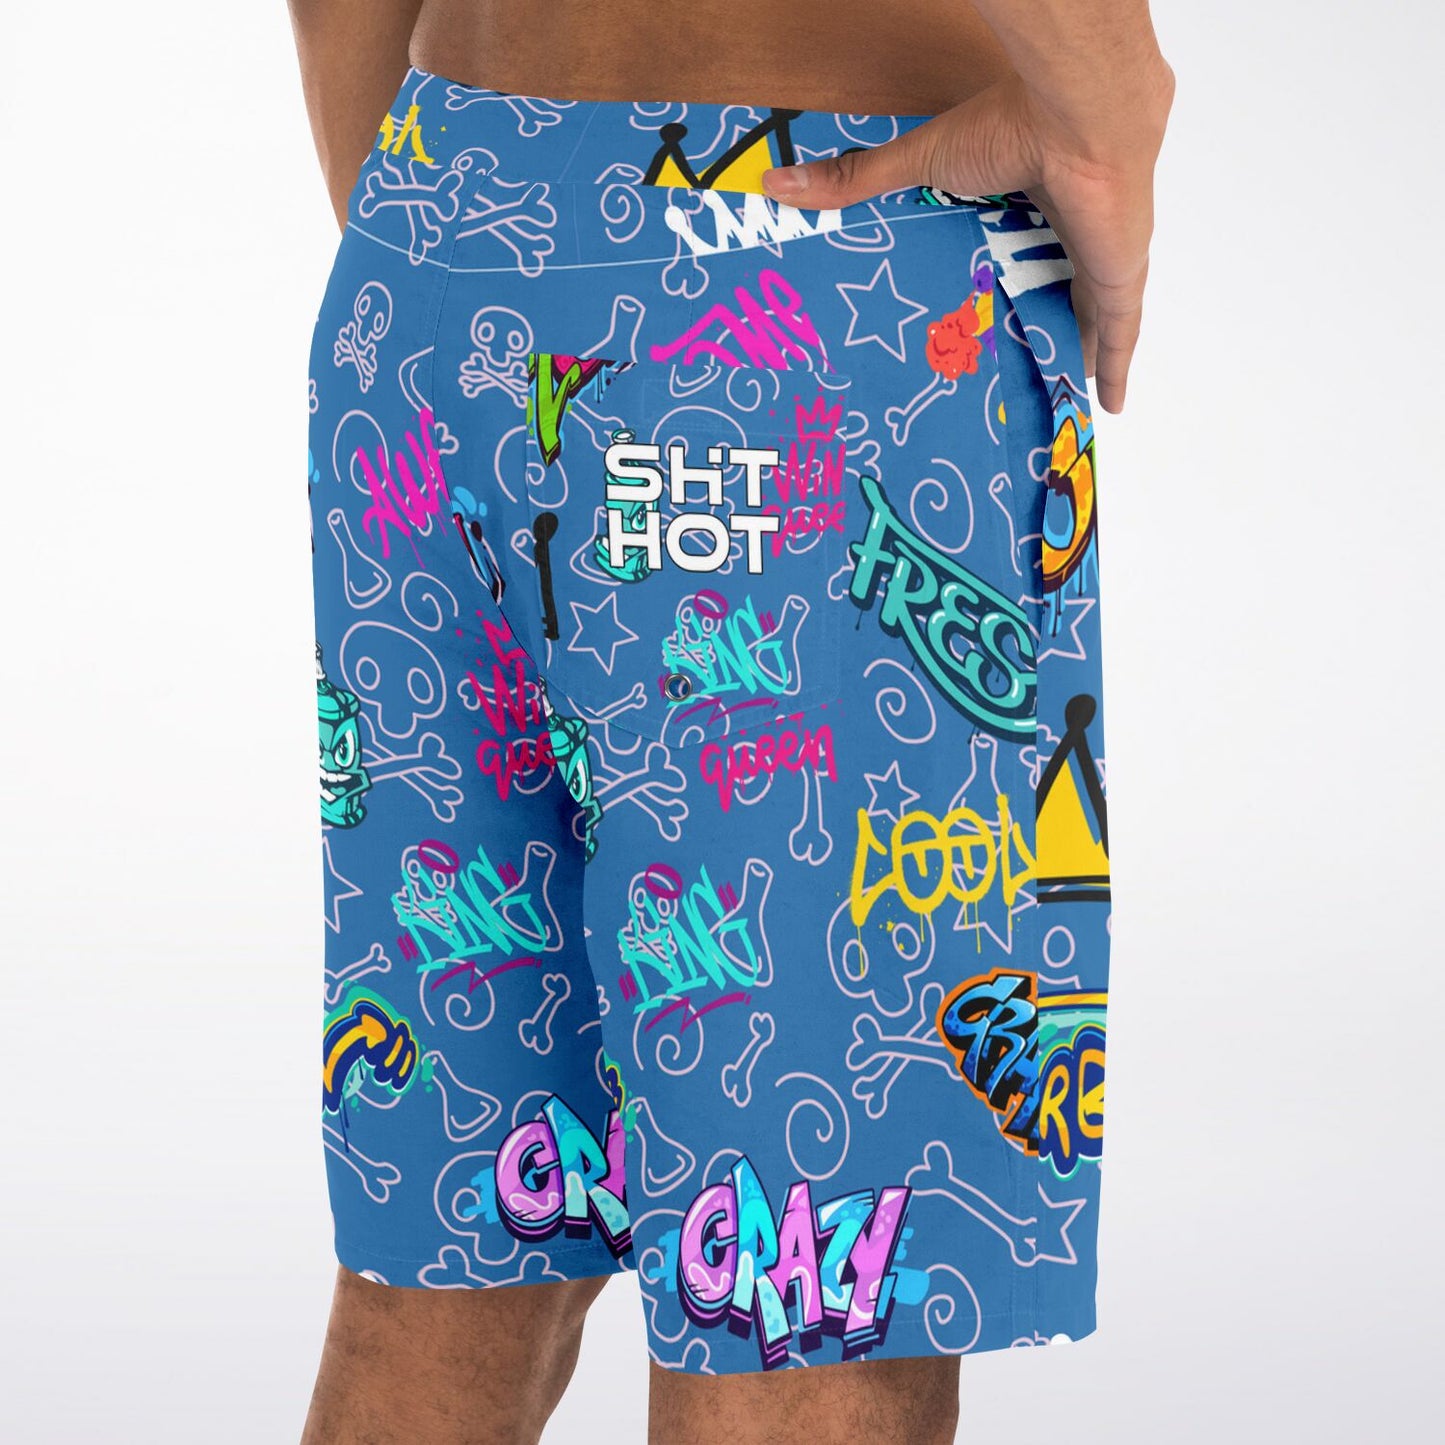 ShitHot Men's Board Shorts - Graffiti Blue